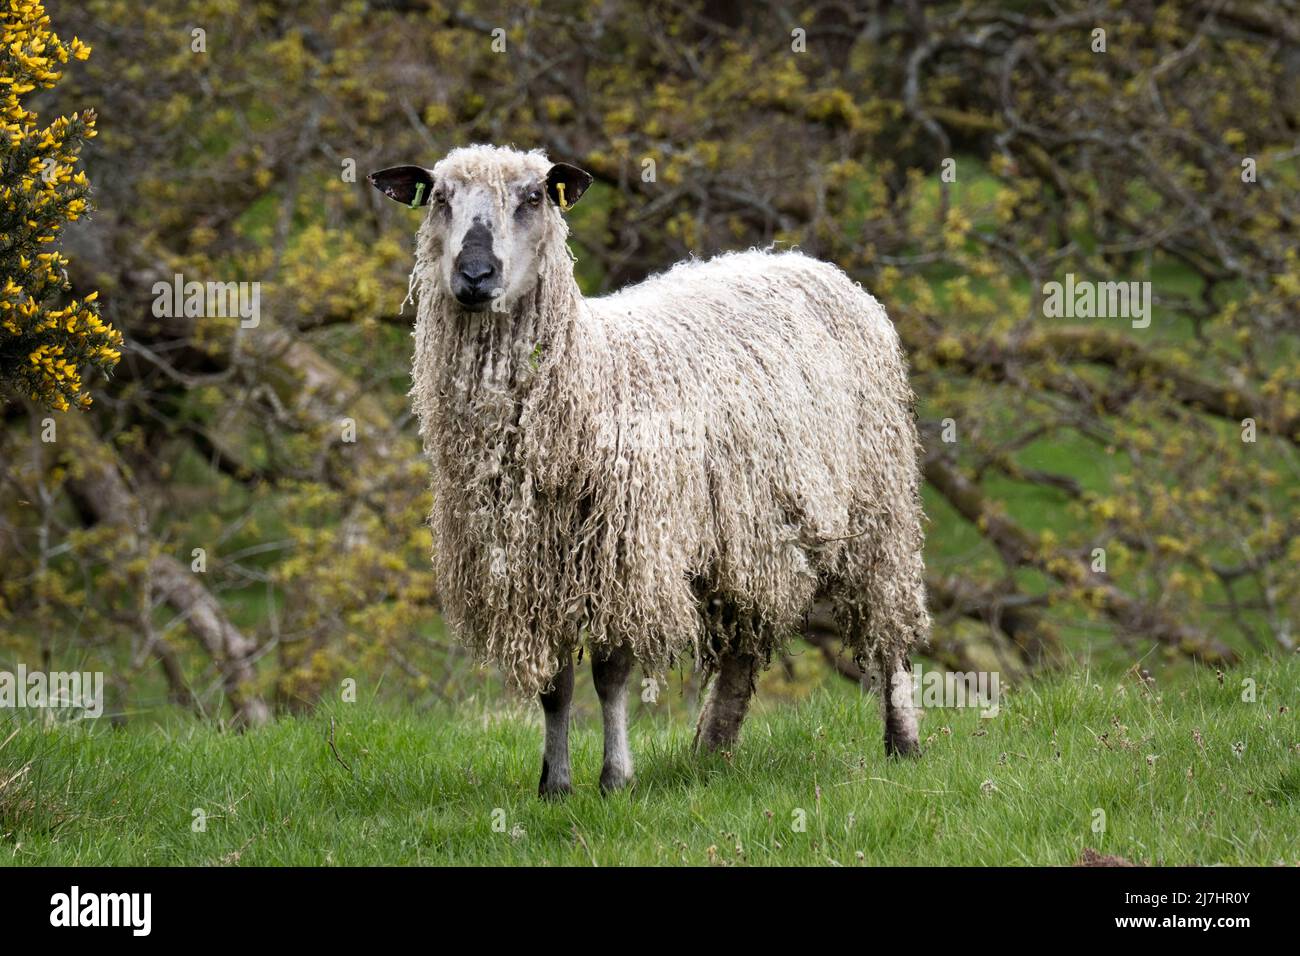 Une brebis à l'eau de mer, voir à Wray, Lancashire. Le Teeswater est une race rare de mouton de laine de mouton originaire de Teesdale, dans le comté de Durham. Banque D'Images